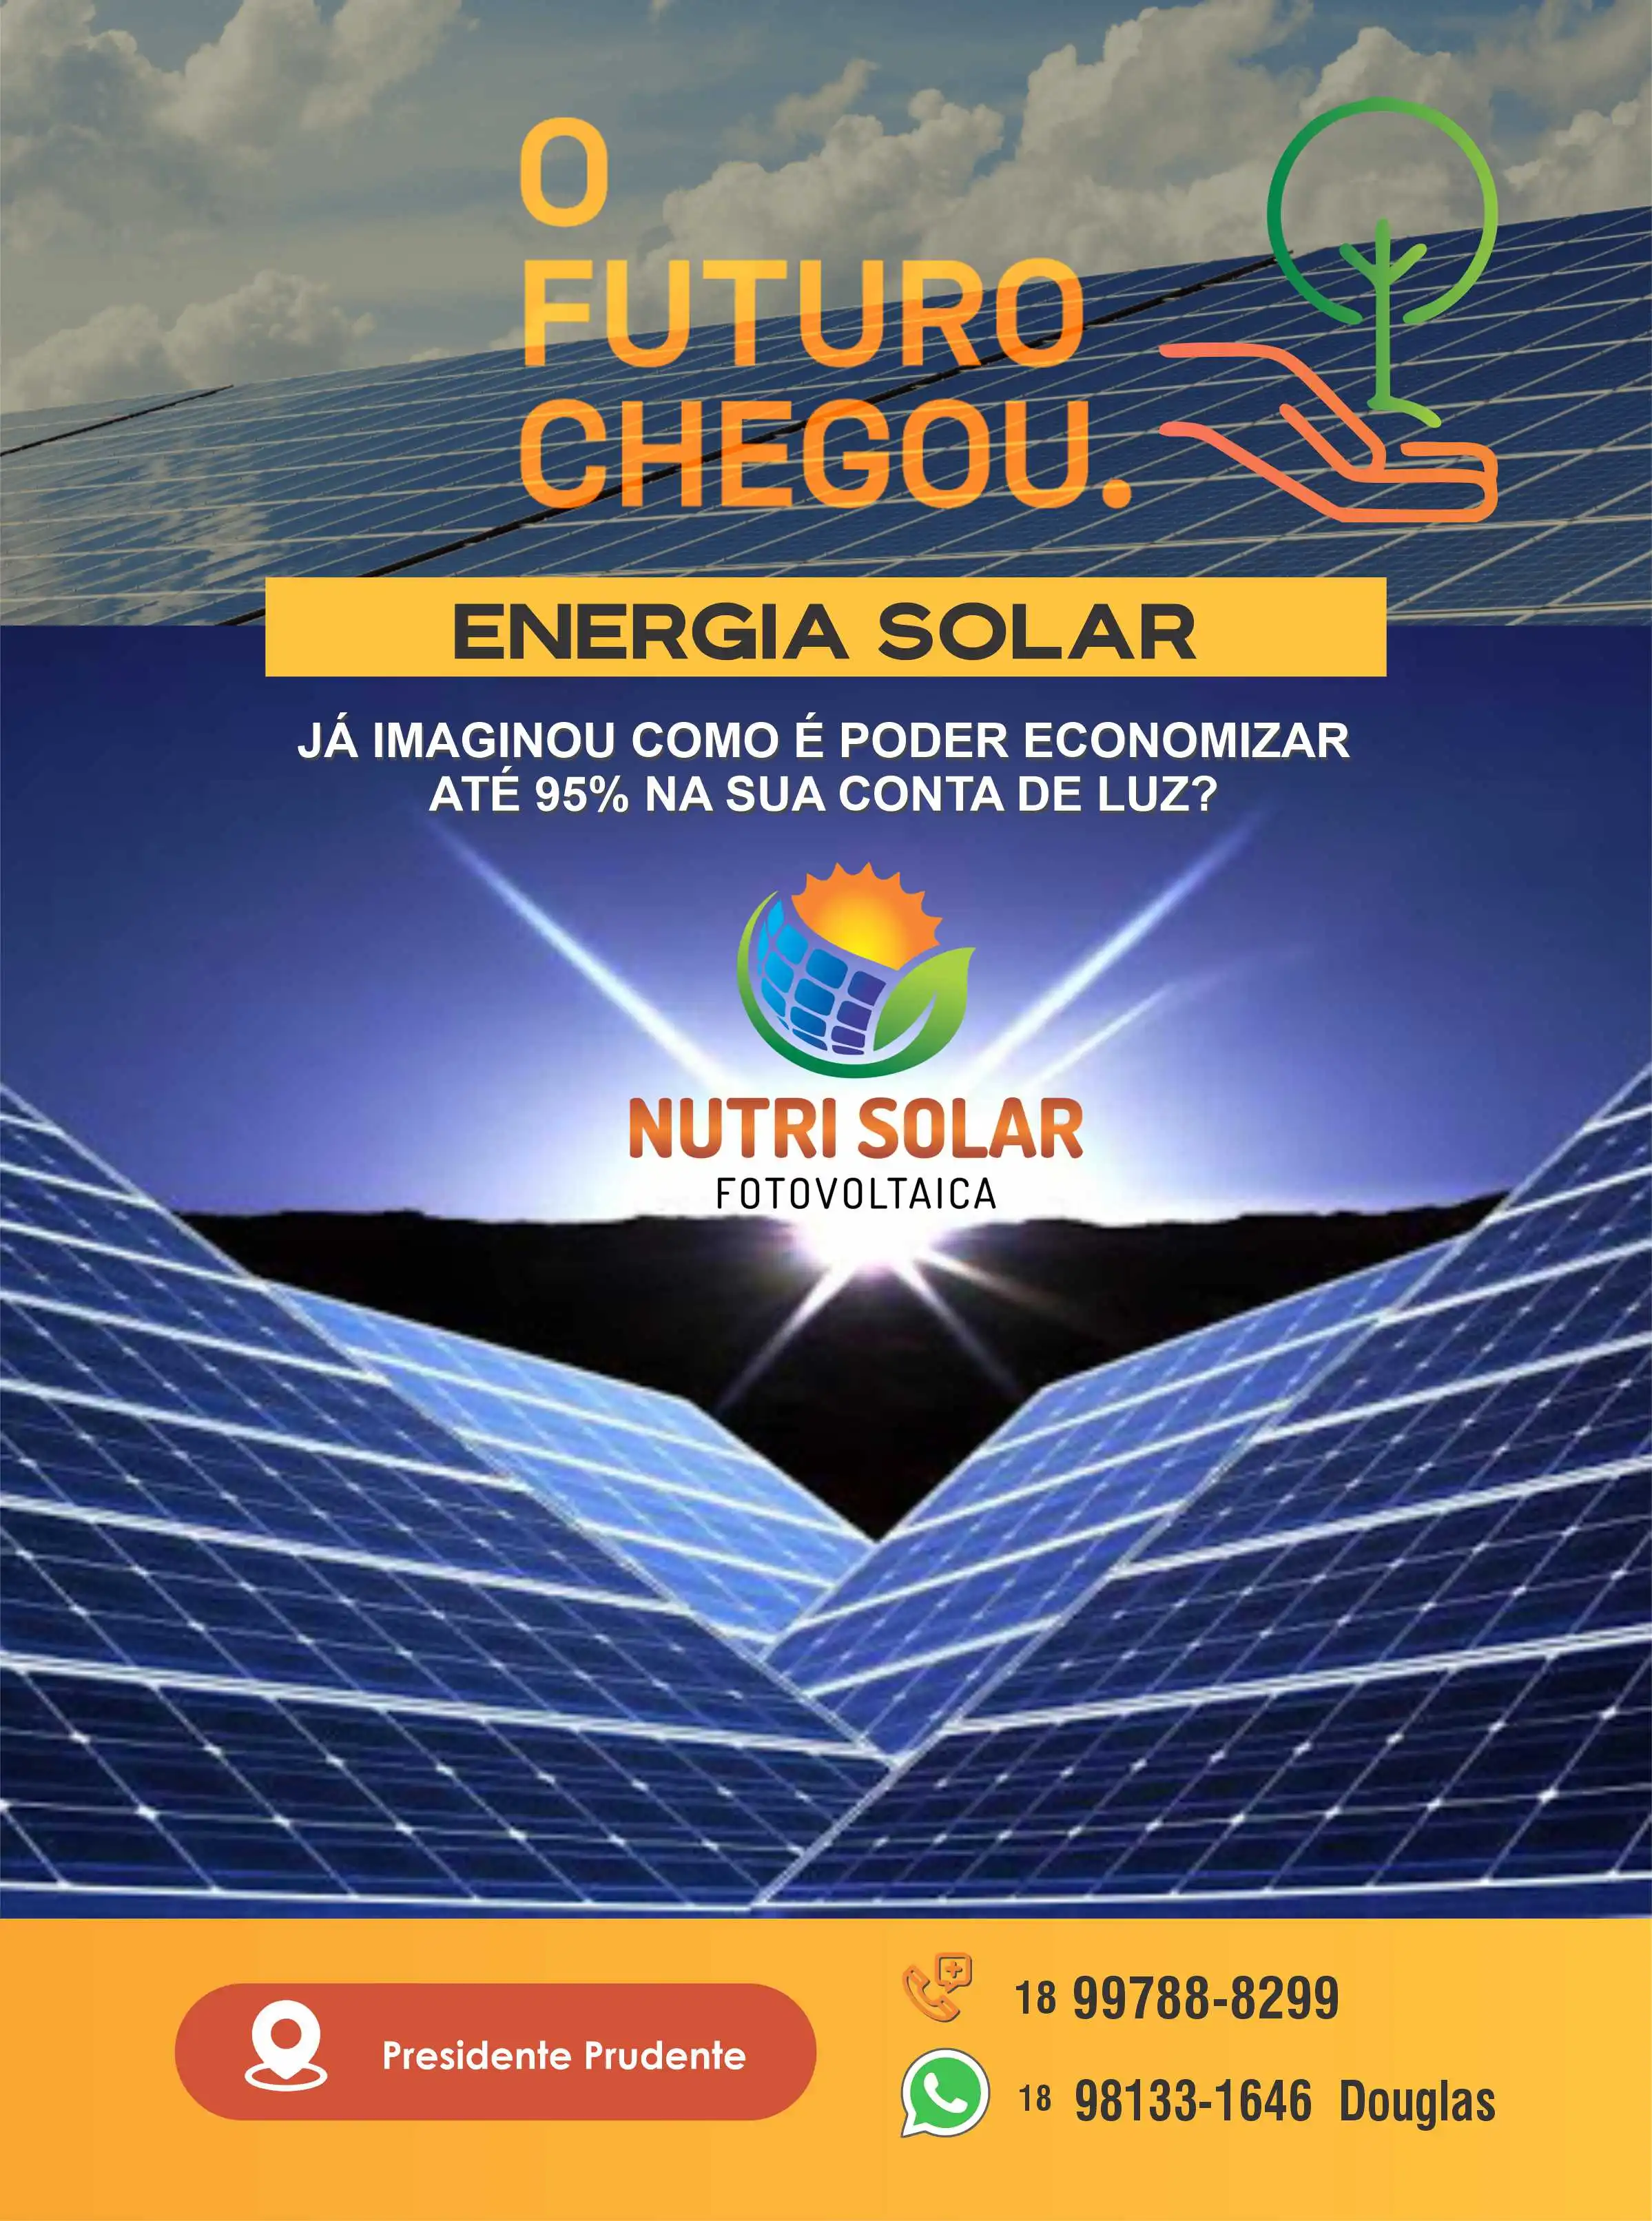 
Folheto Panfleto sobre Energia Solar Energia Fotovoltaica



